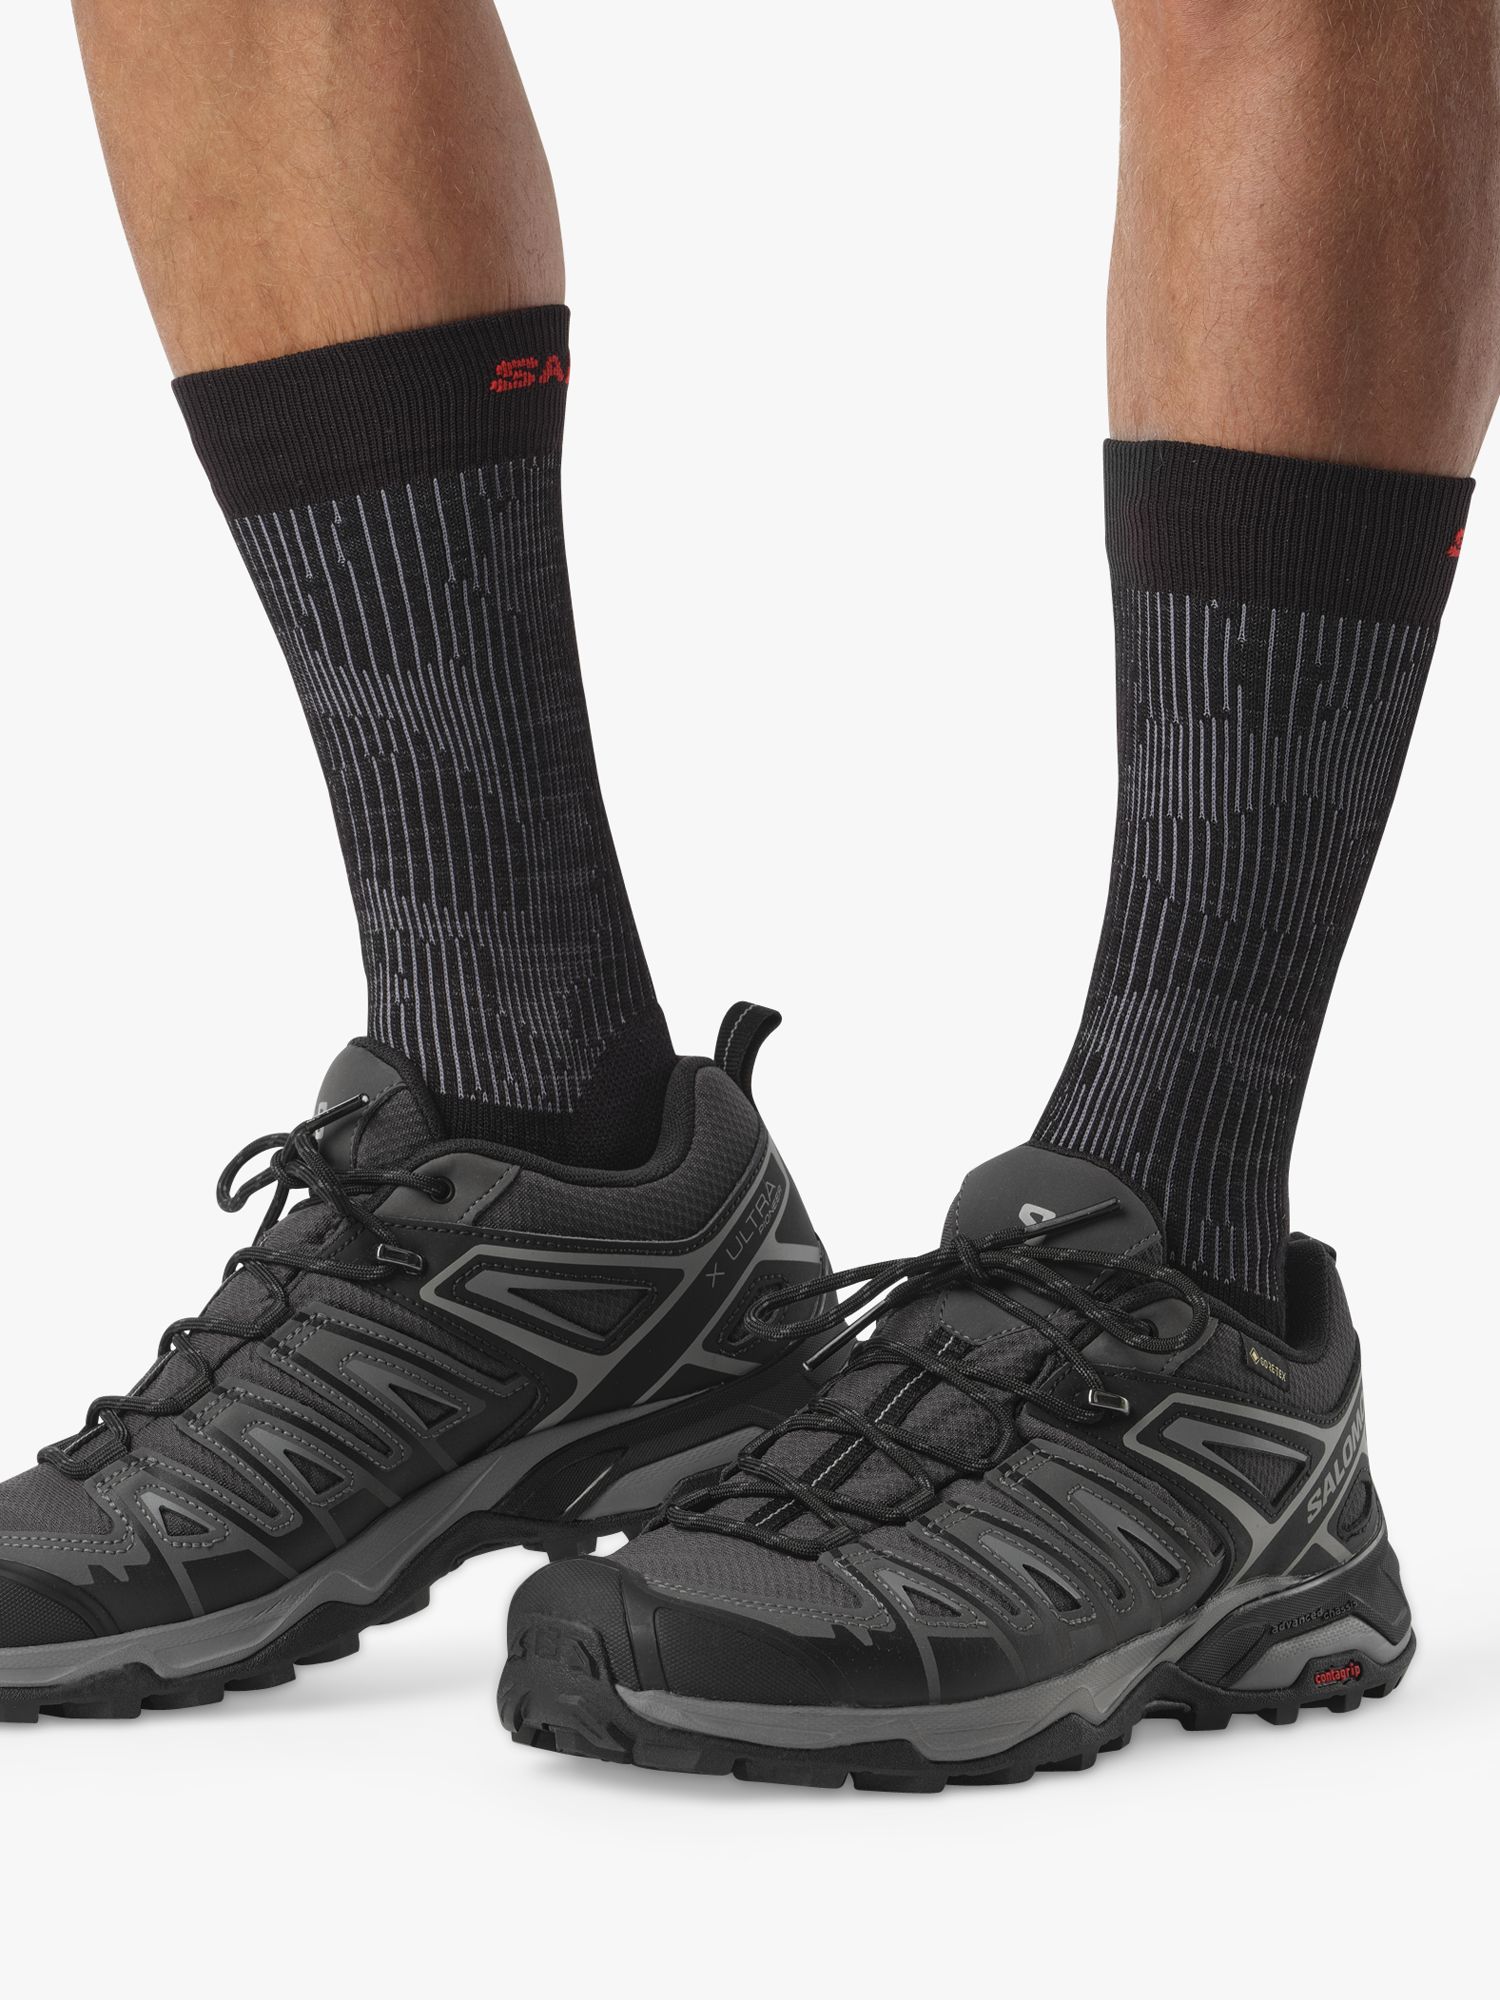 Gehoorzaam aankomst Fervent Salomon X Ultra Pioneer Men's Waterproof Gore-Tex Hiking Shoes,  Phantom/Black at John Lewis & Partners